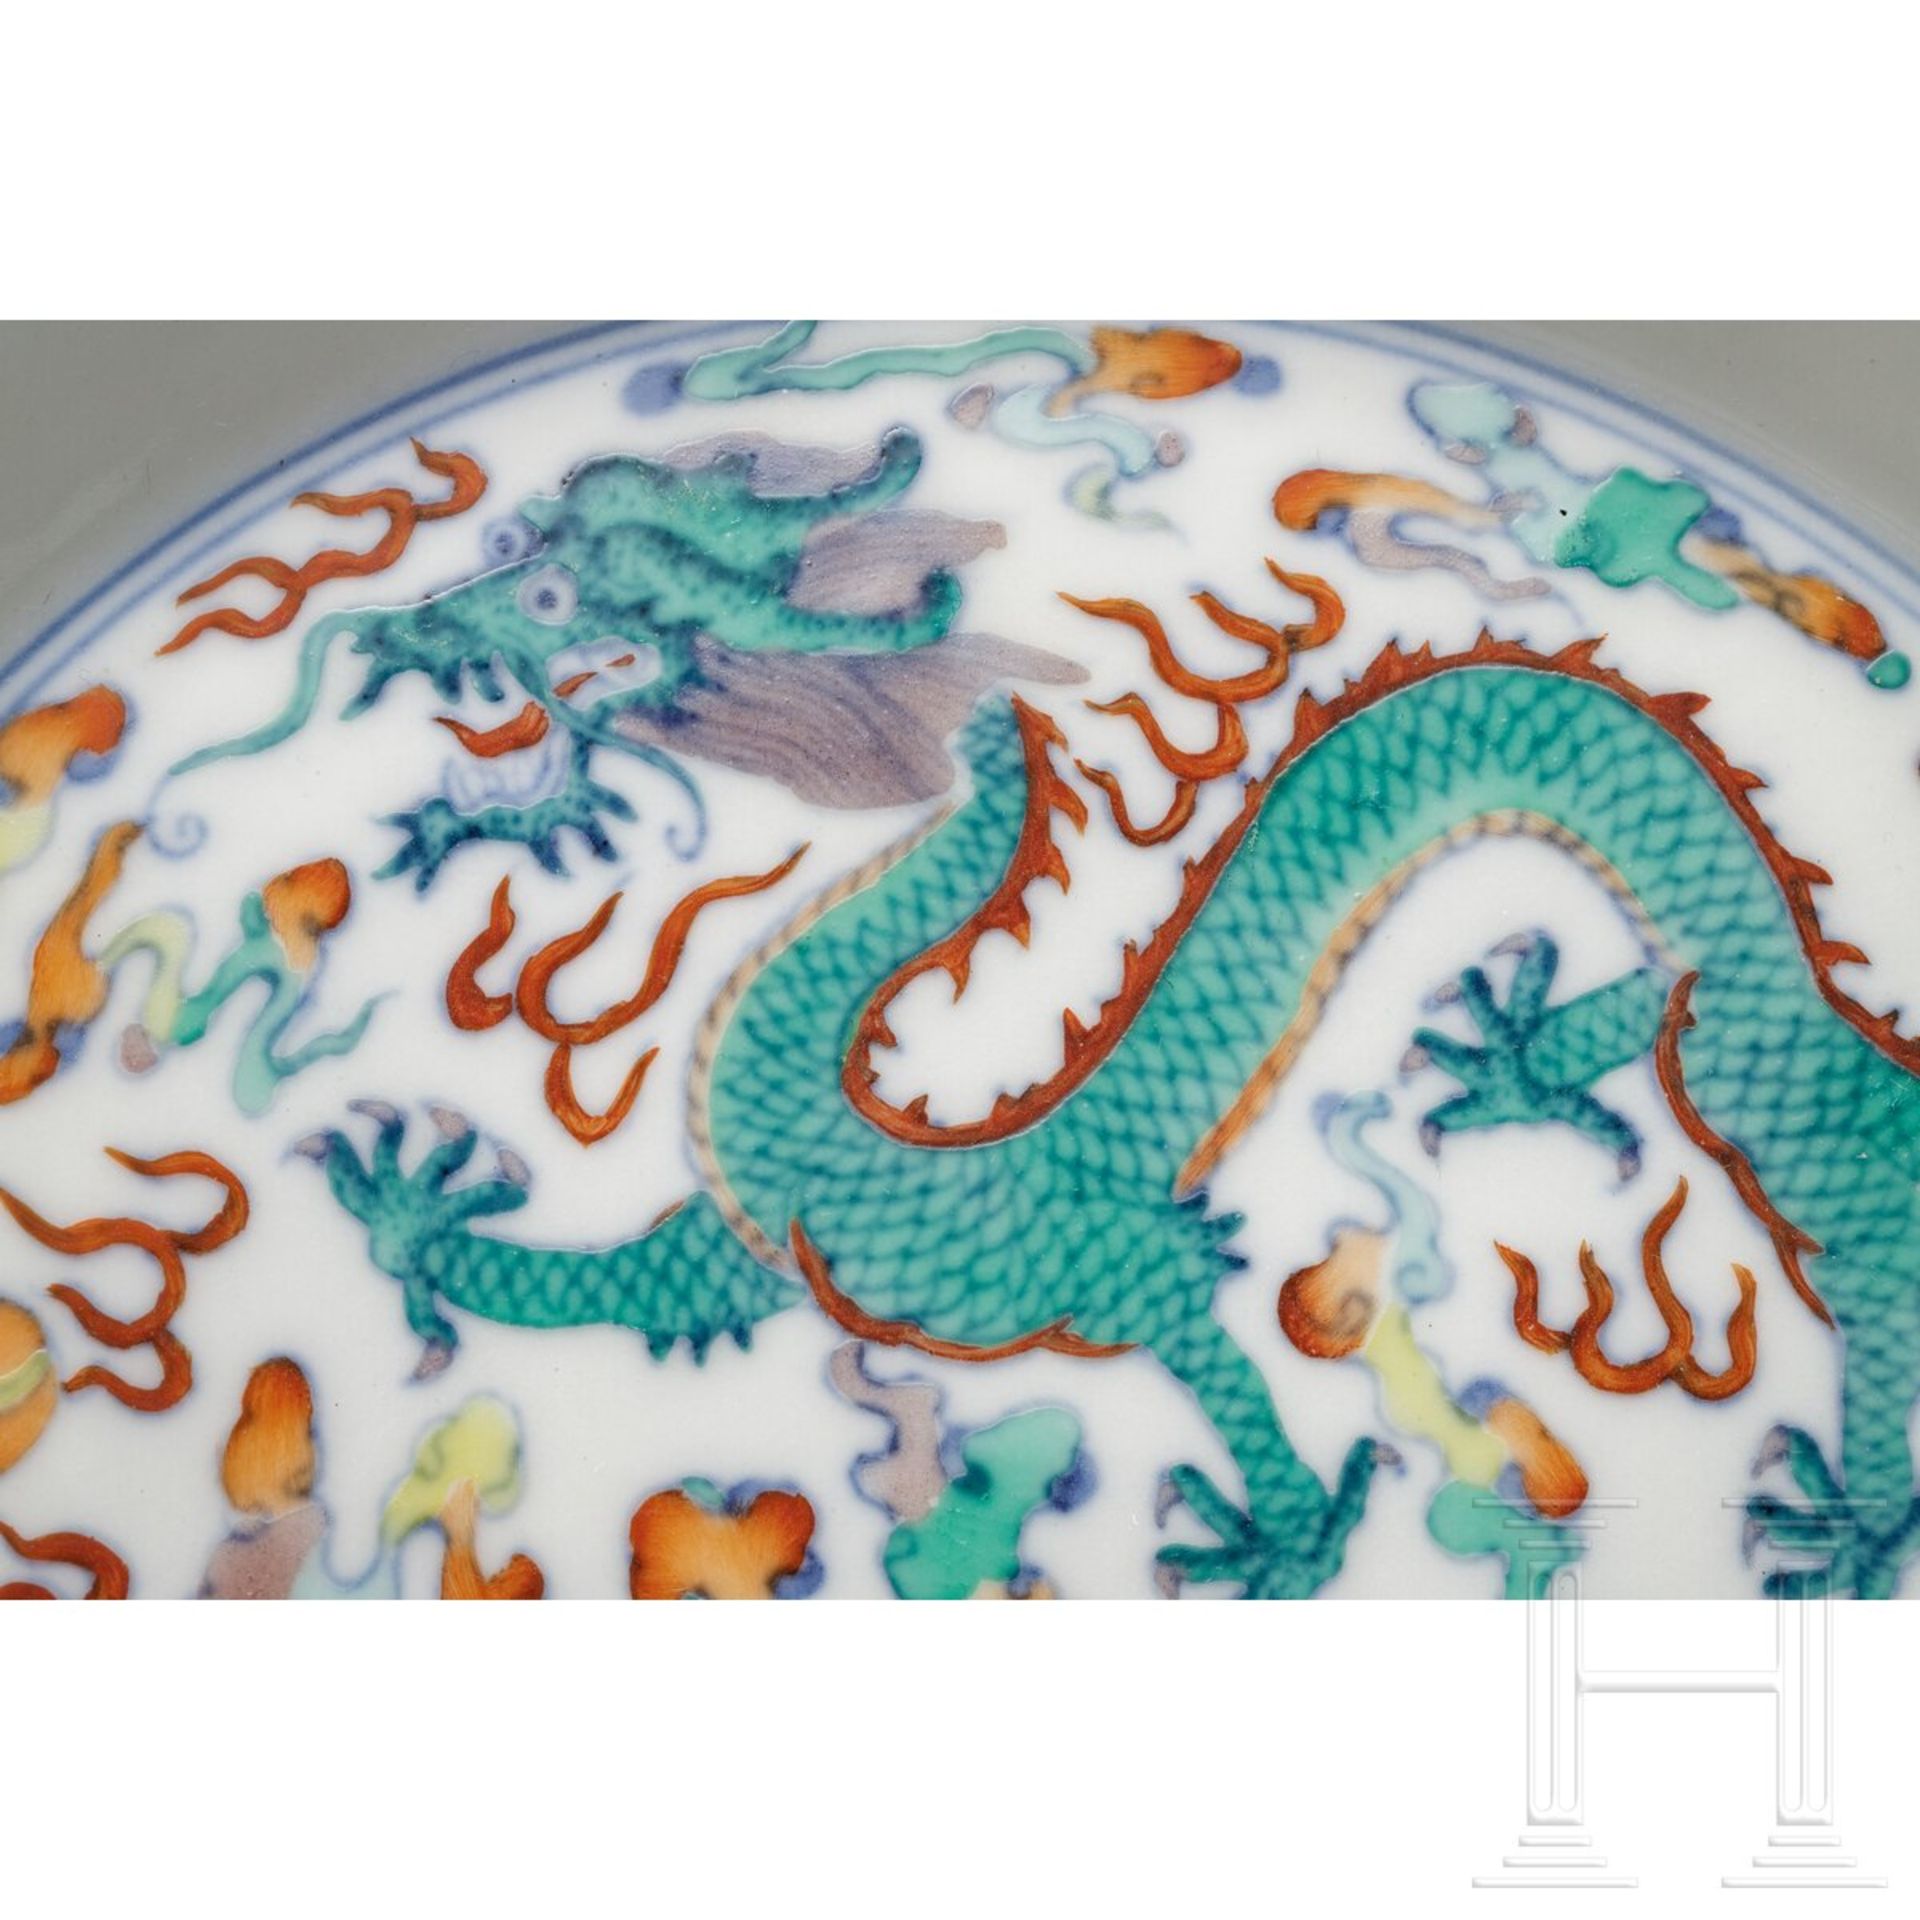 Doucai-Drachen und Phönix-Teller mit Qianlong-Marke, wohl aus späterer Zeit - Image 4 of 19